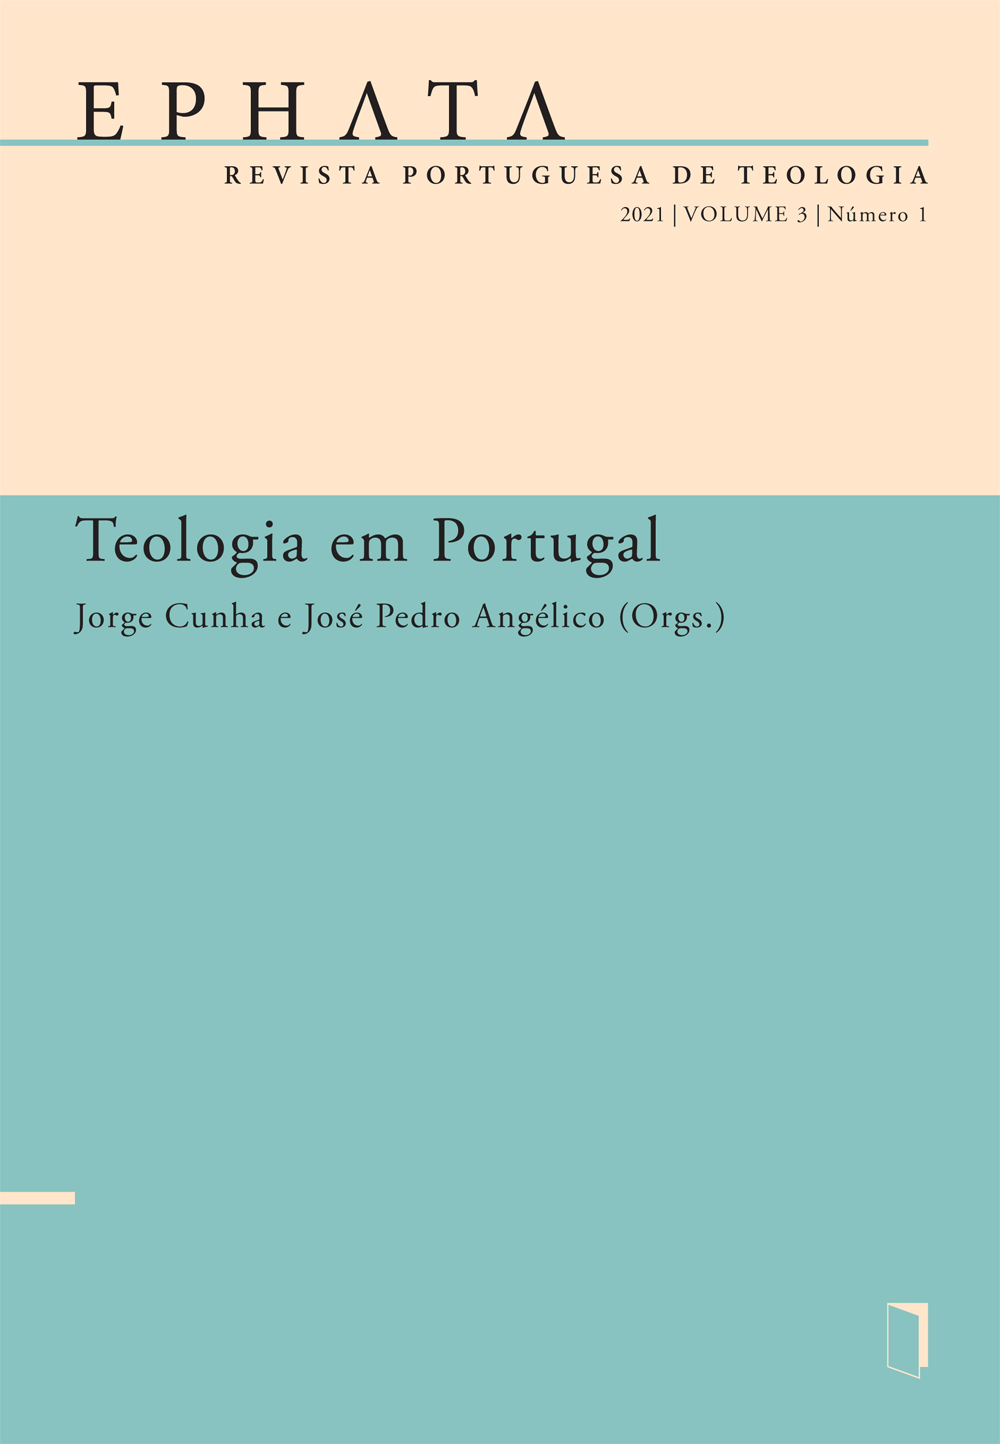 EPHATA v. 3 n. 1 (2021): Teologia em Portugal - Universidade Católica Editora